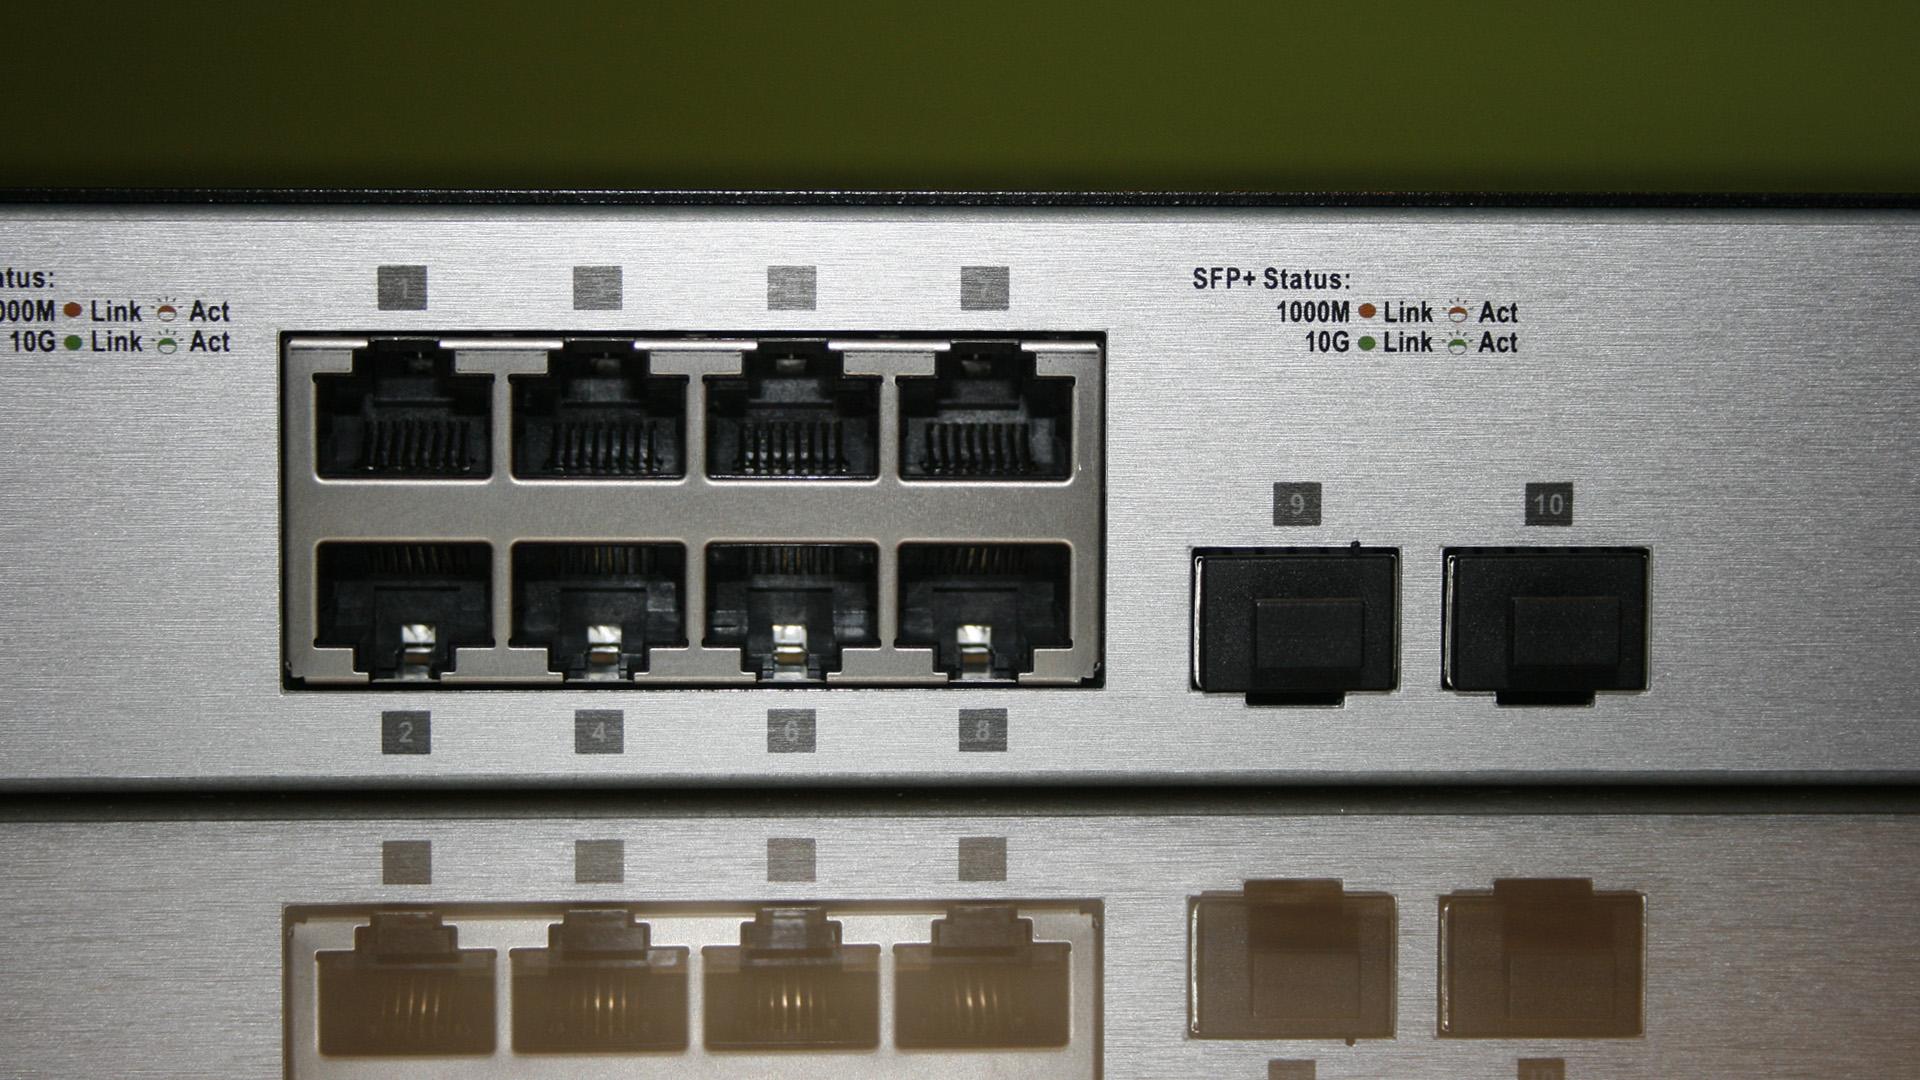 Detalle de los puertos 10G del switch D-Link DXS-1100-10TS